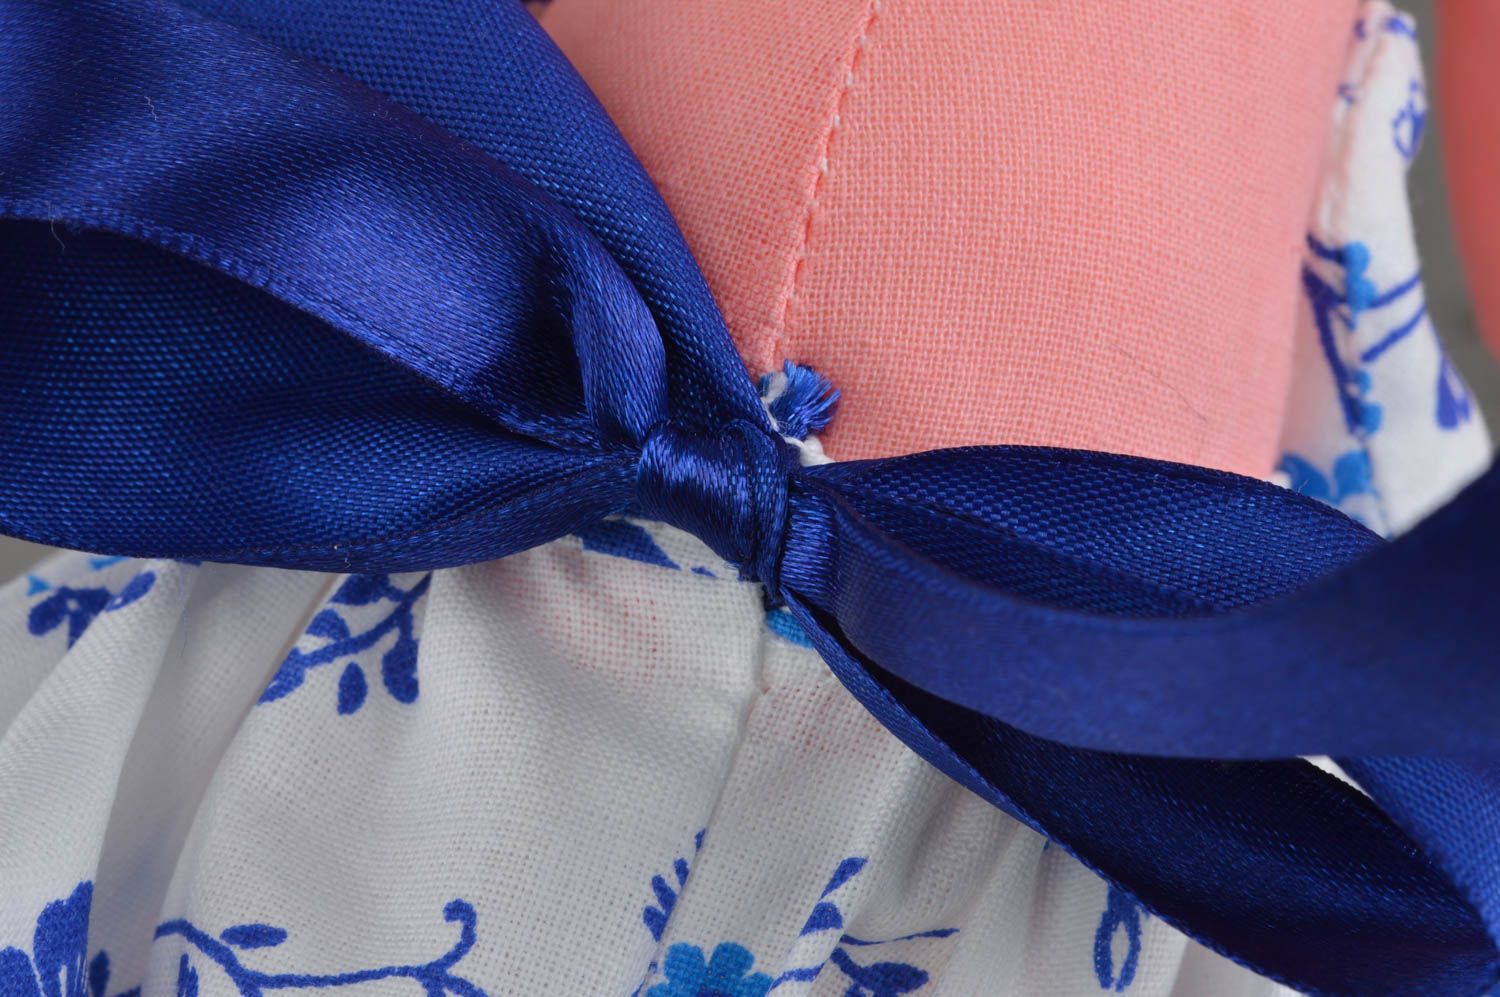 Joli jouet mou fait main en forme de lapine rose en robe bleue cadeau fille photo 5